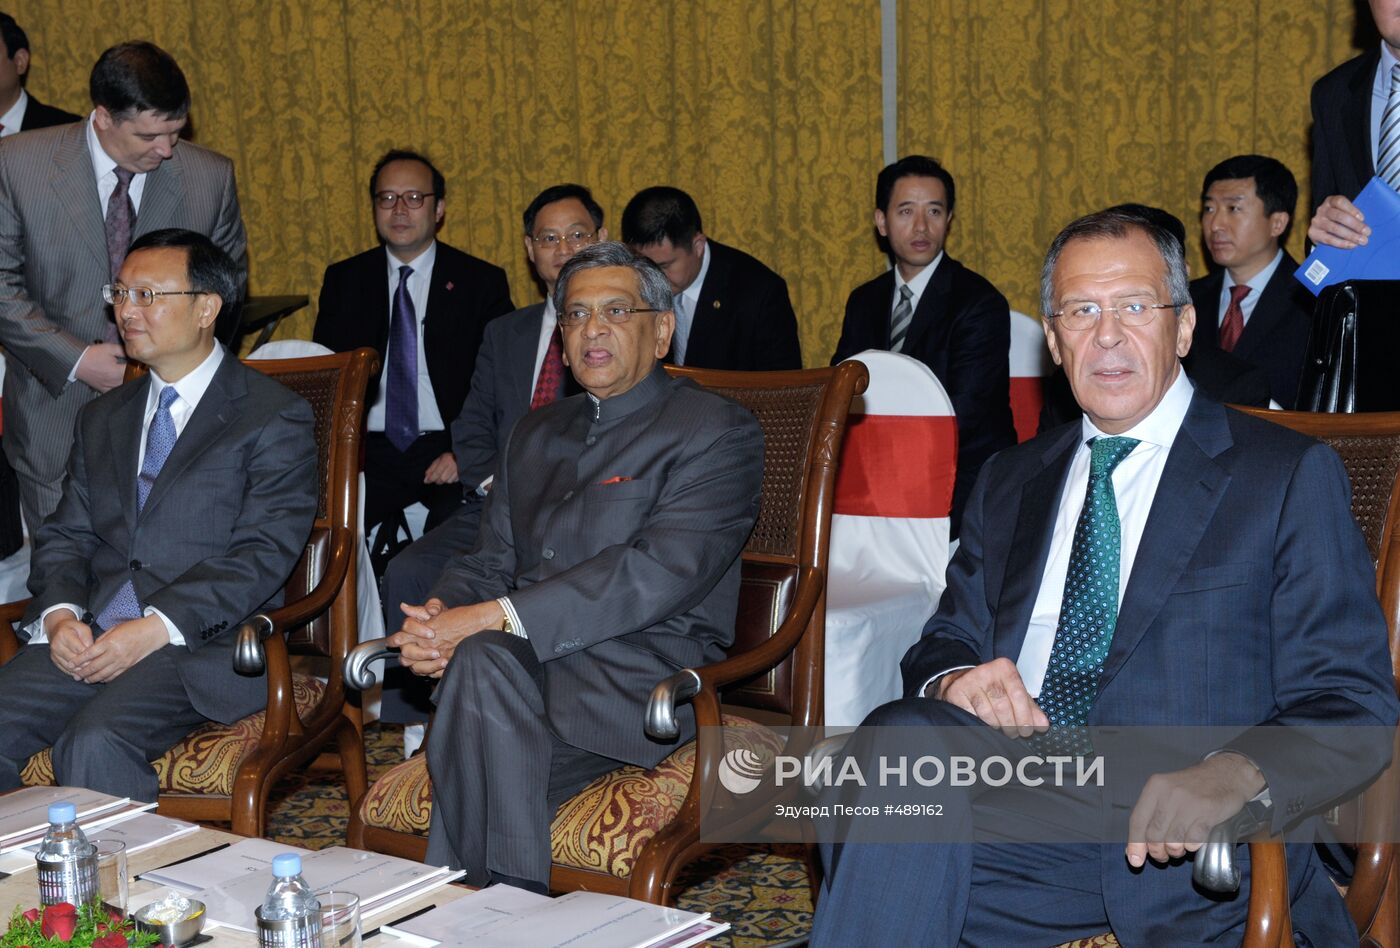 Встреча глав МИД России, Индии и Китая в Бангалоре